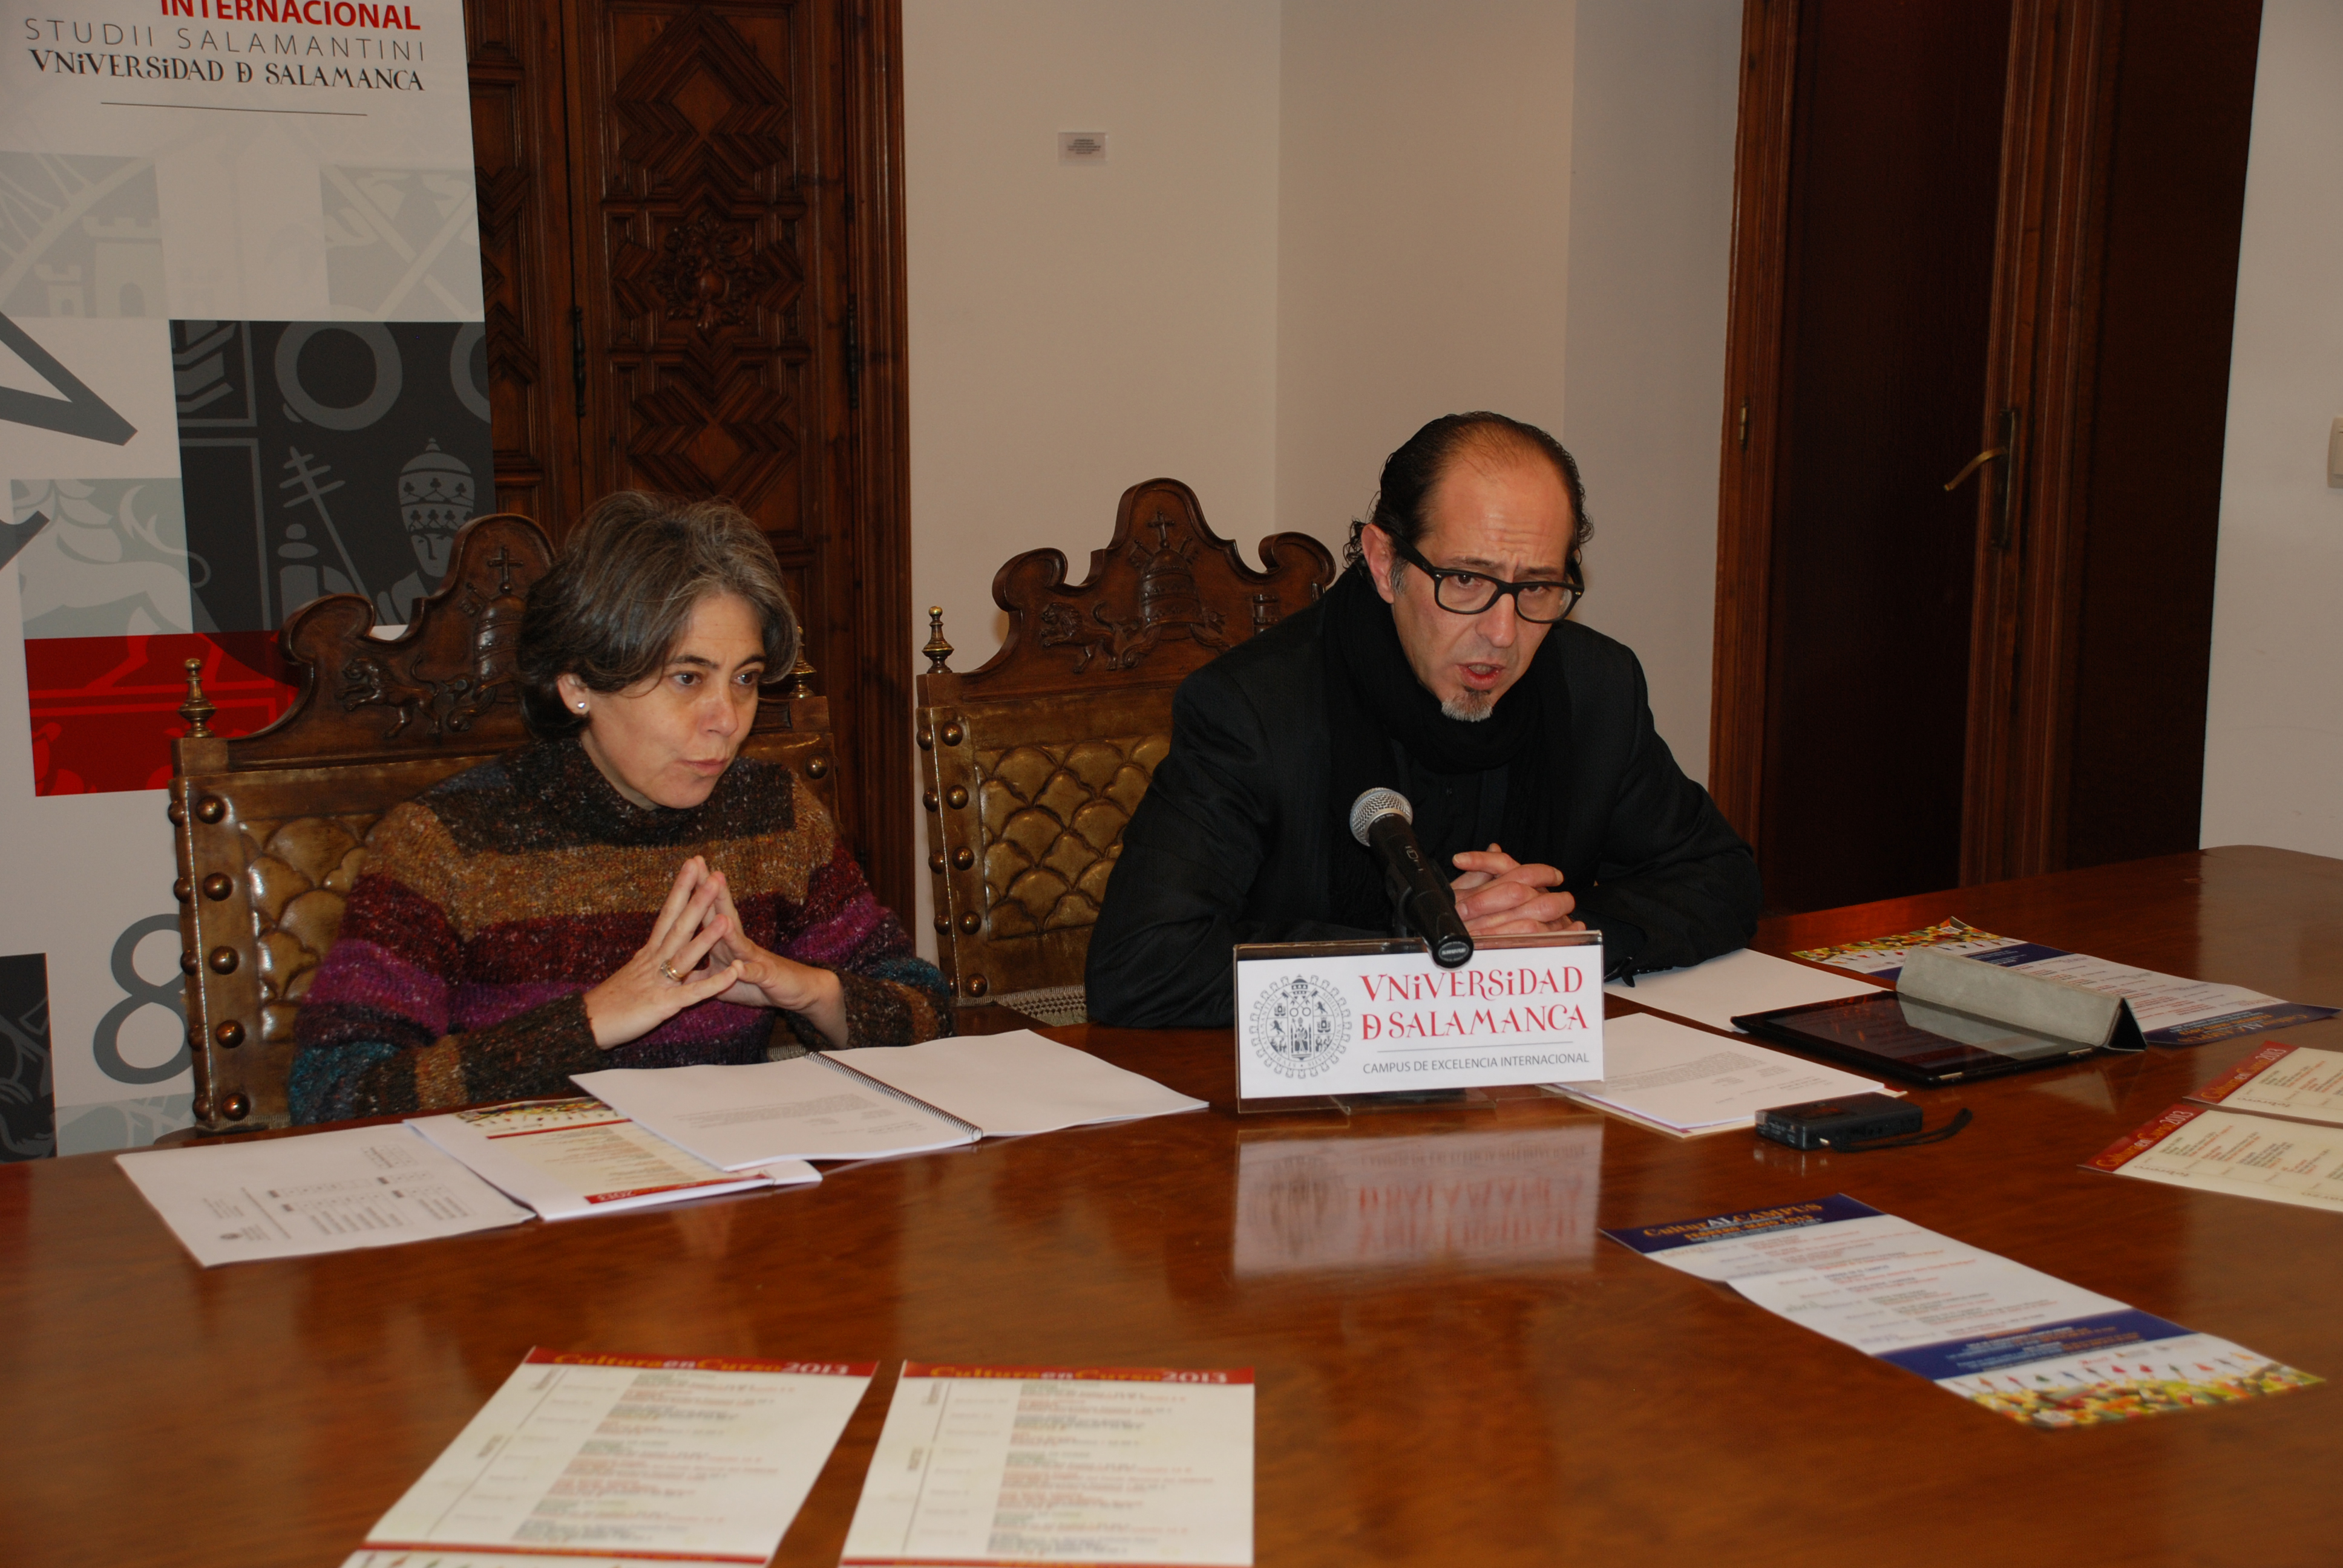 Música, teatro, monólogos, exposiciones y literatura centran la actividad cultural de la Universidad de Salamanca para el primer trimestre de 2013